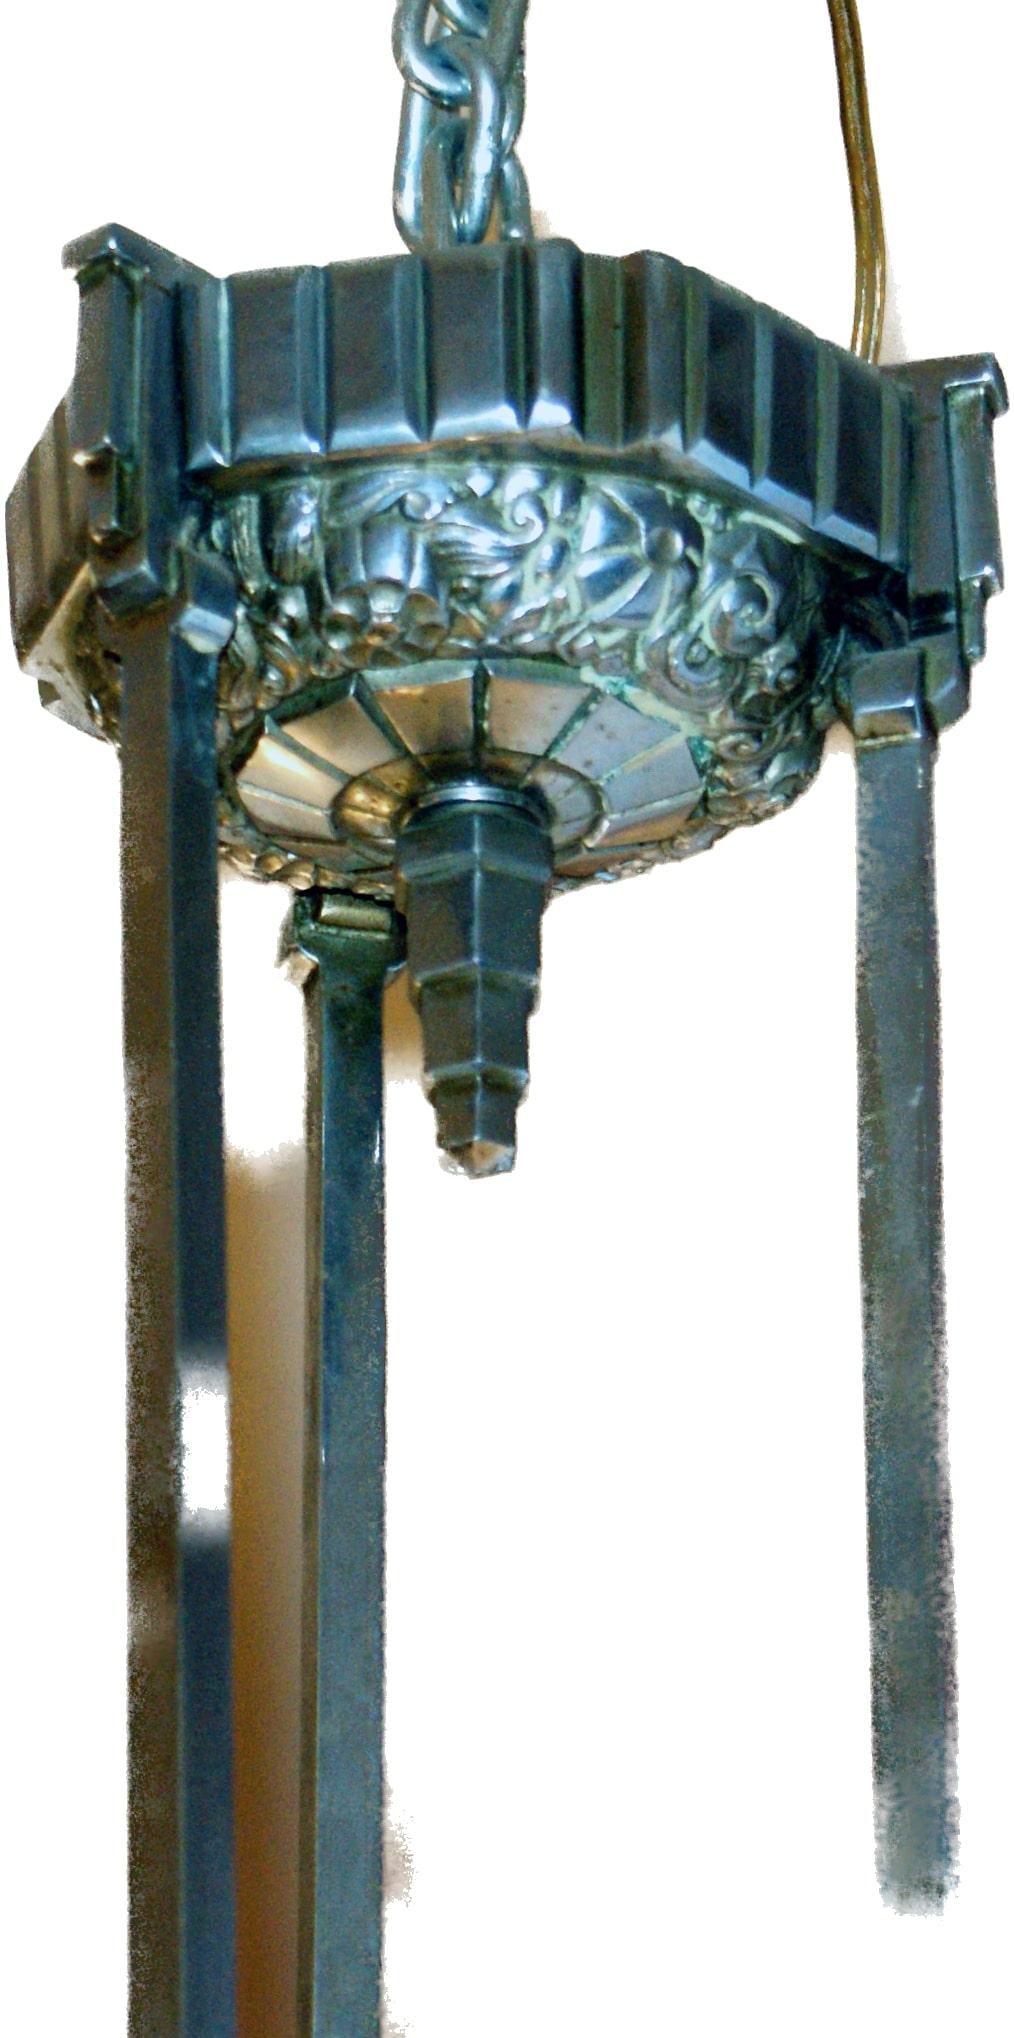 Die Leuchte stammt aus der Mitte des 20. Jahrhunderts und besteht aus einer weiß verchromten Bronzestruktur, die drei tulpenförmige Lampenschirme trägt. Die Lampenschirme und das einteilige Mittelbecken sind aus geformtem und gepresstem Glas, einer